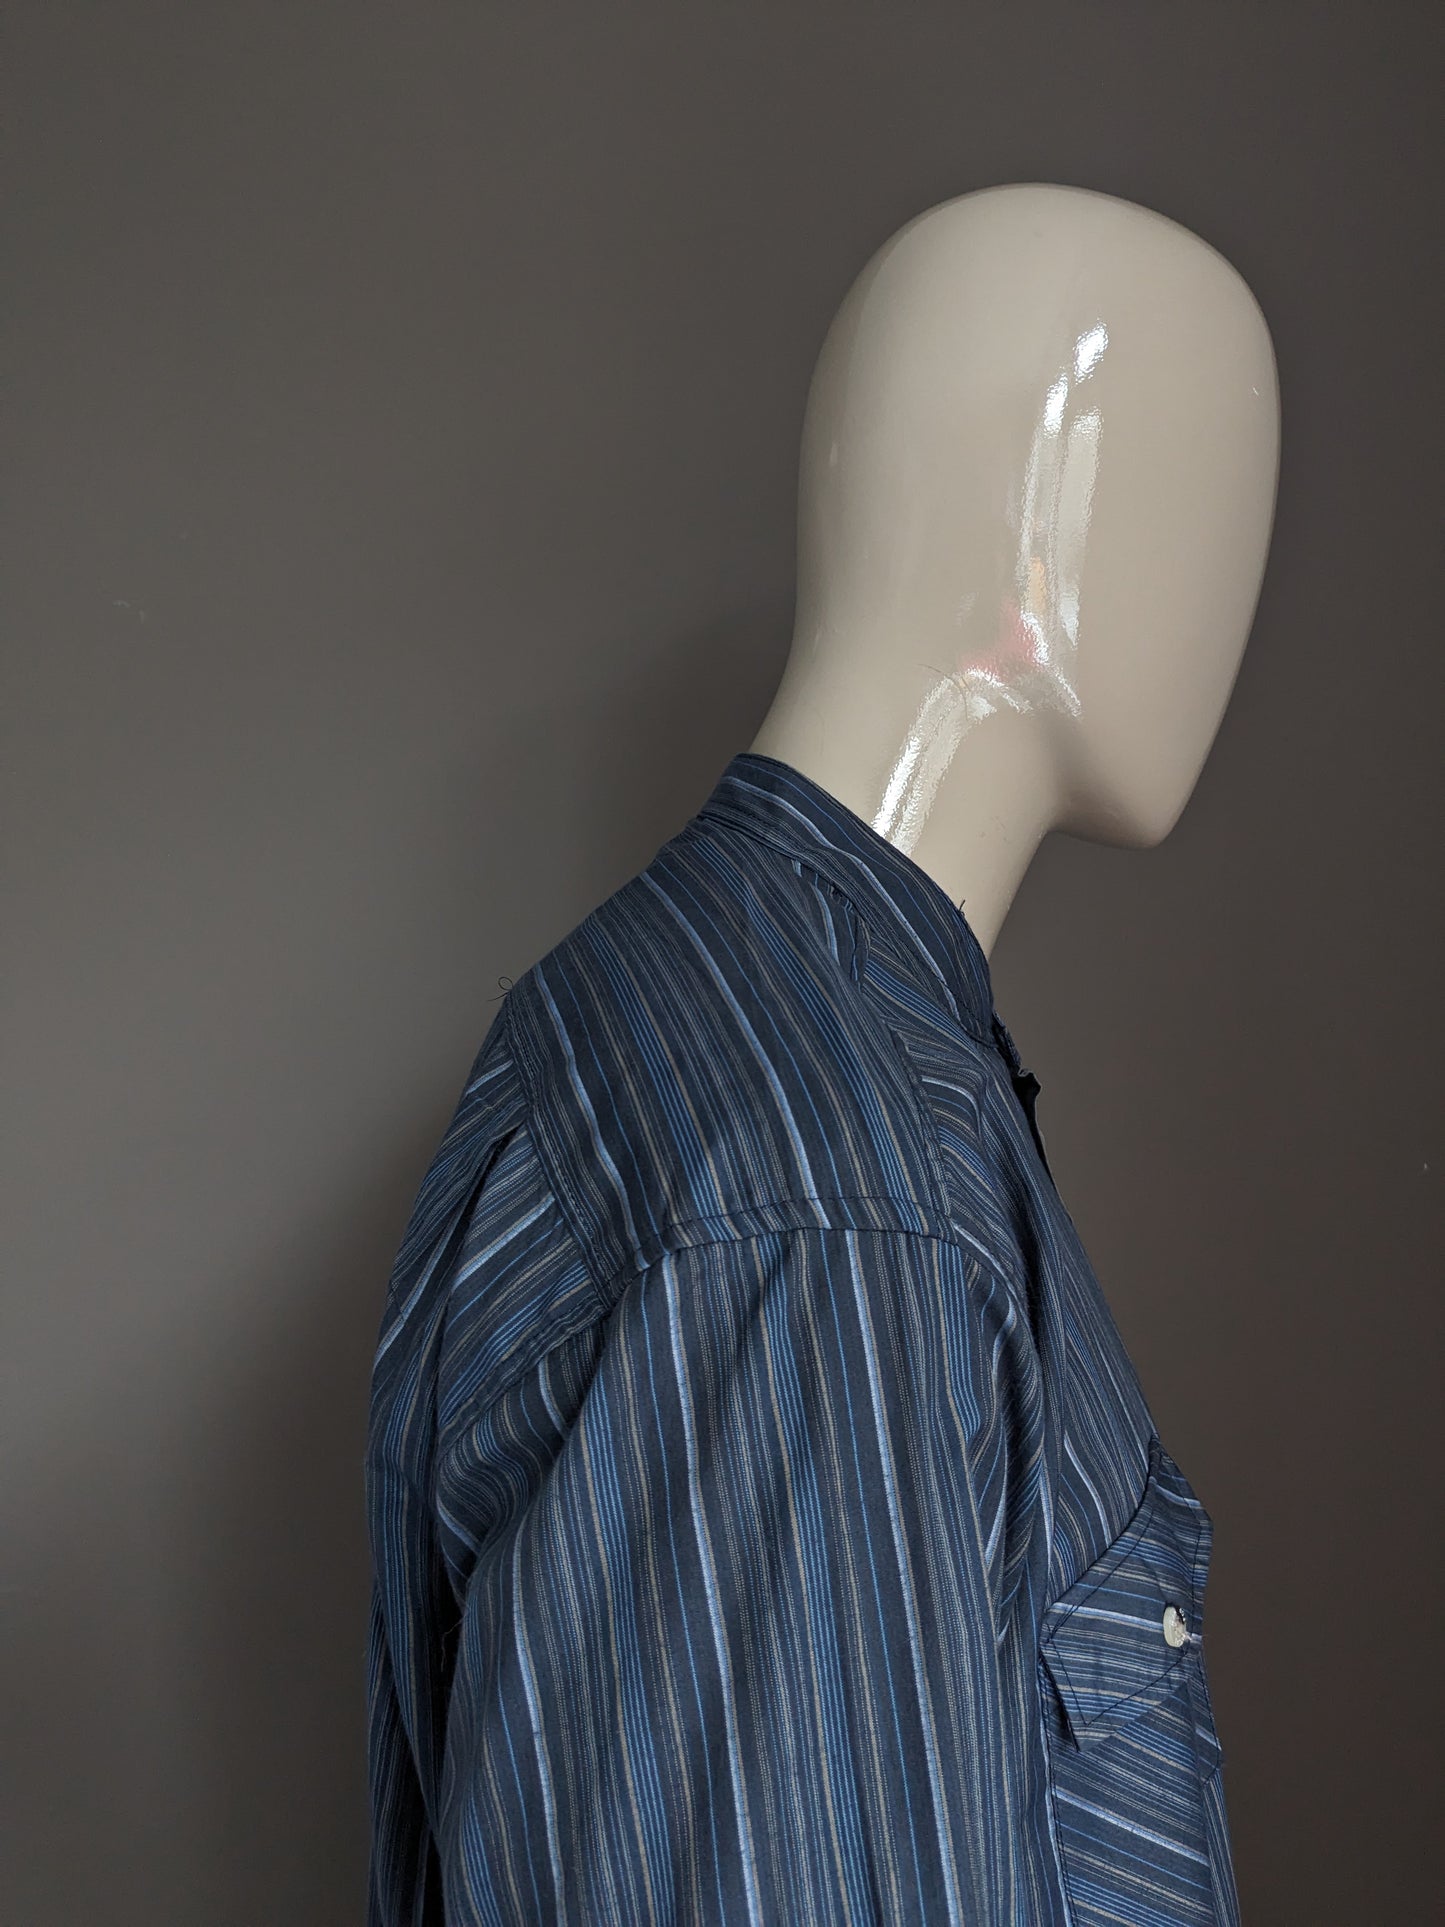 Camisa de Atlas para hombres con camisa vertical / agricultores / collar MAO. Azones azul rayado. Tamaño 2xl / xxl.